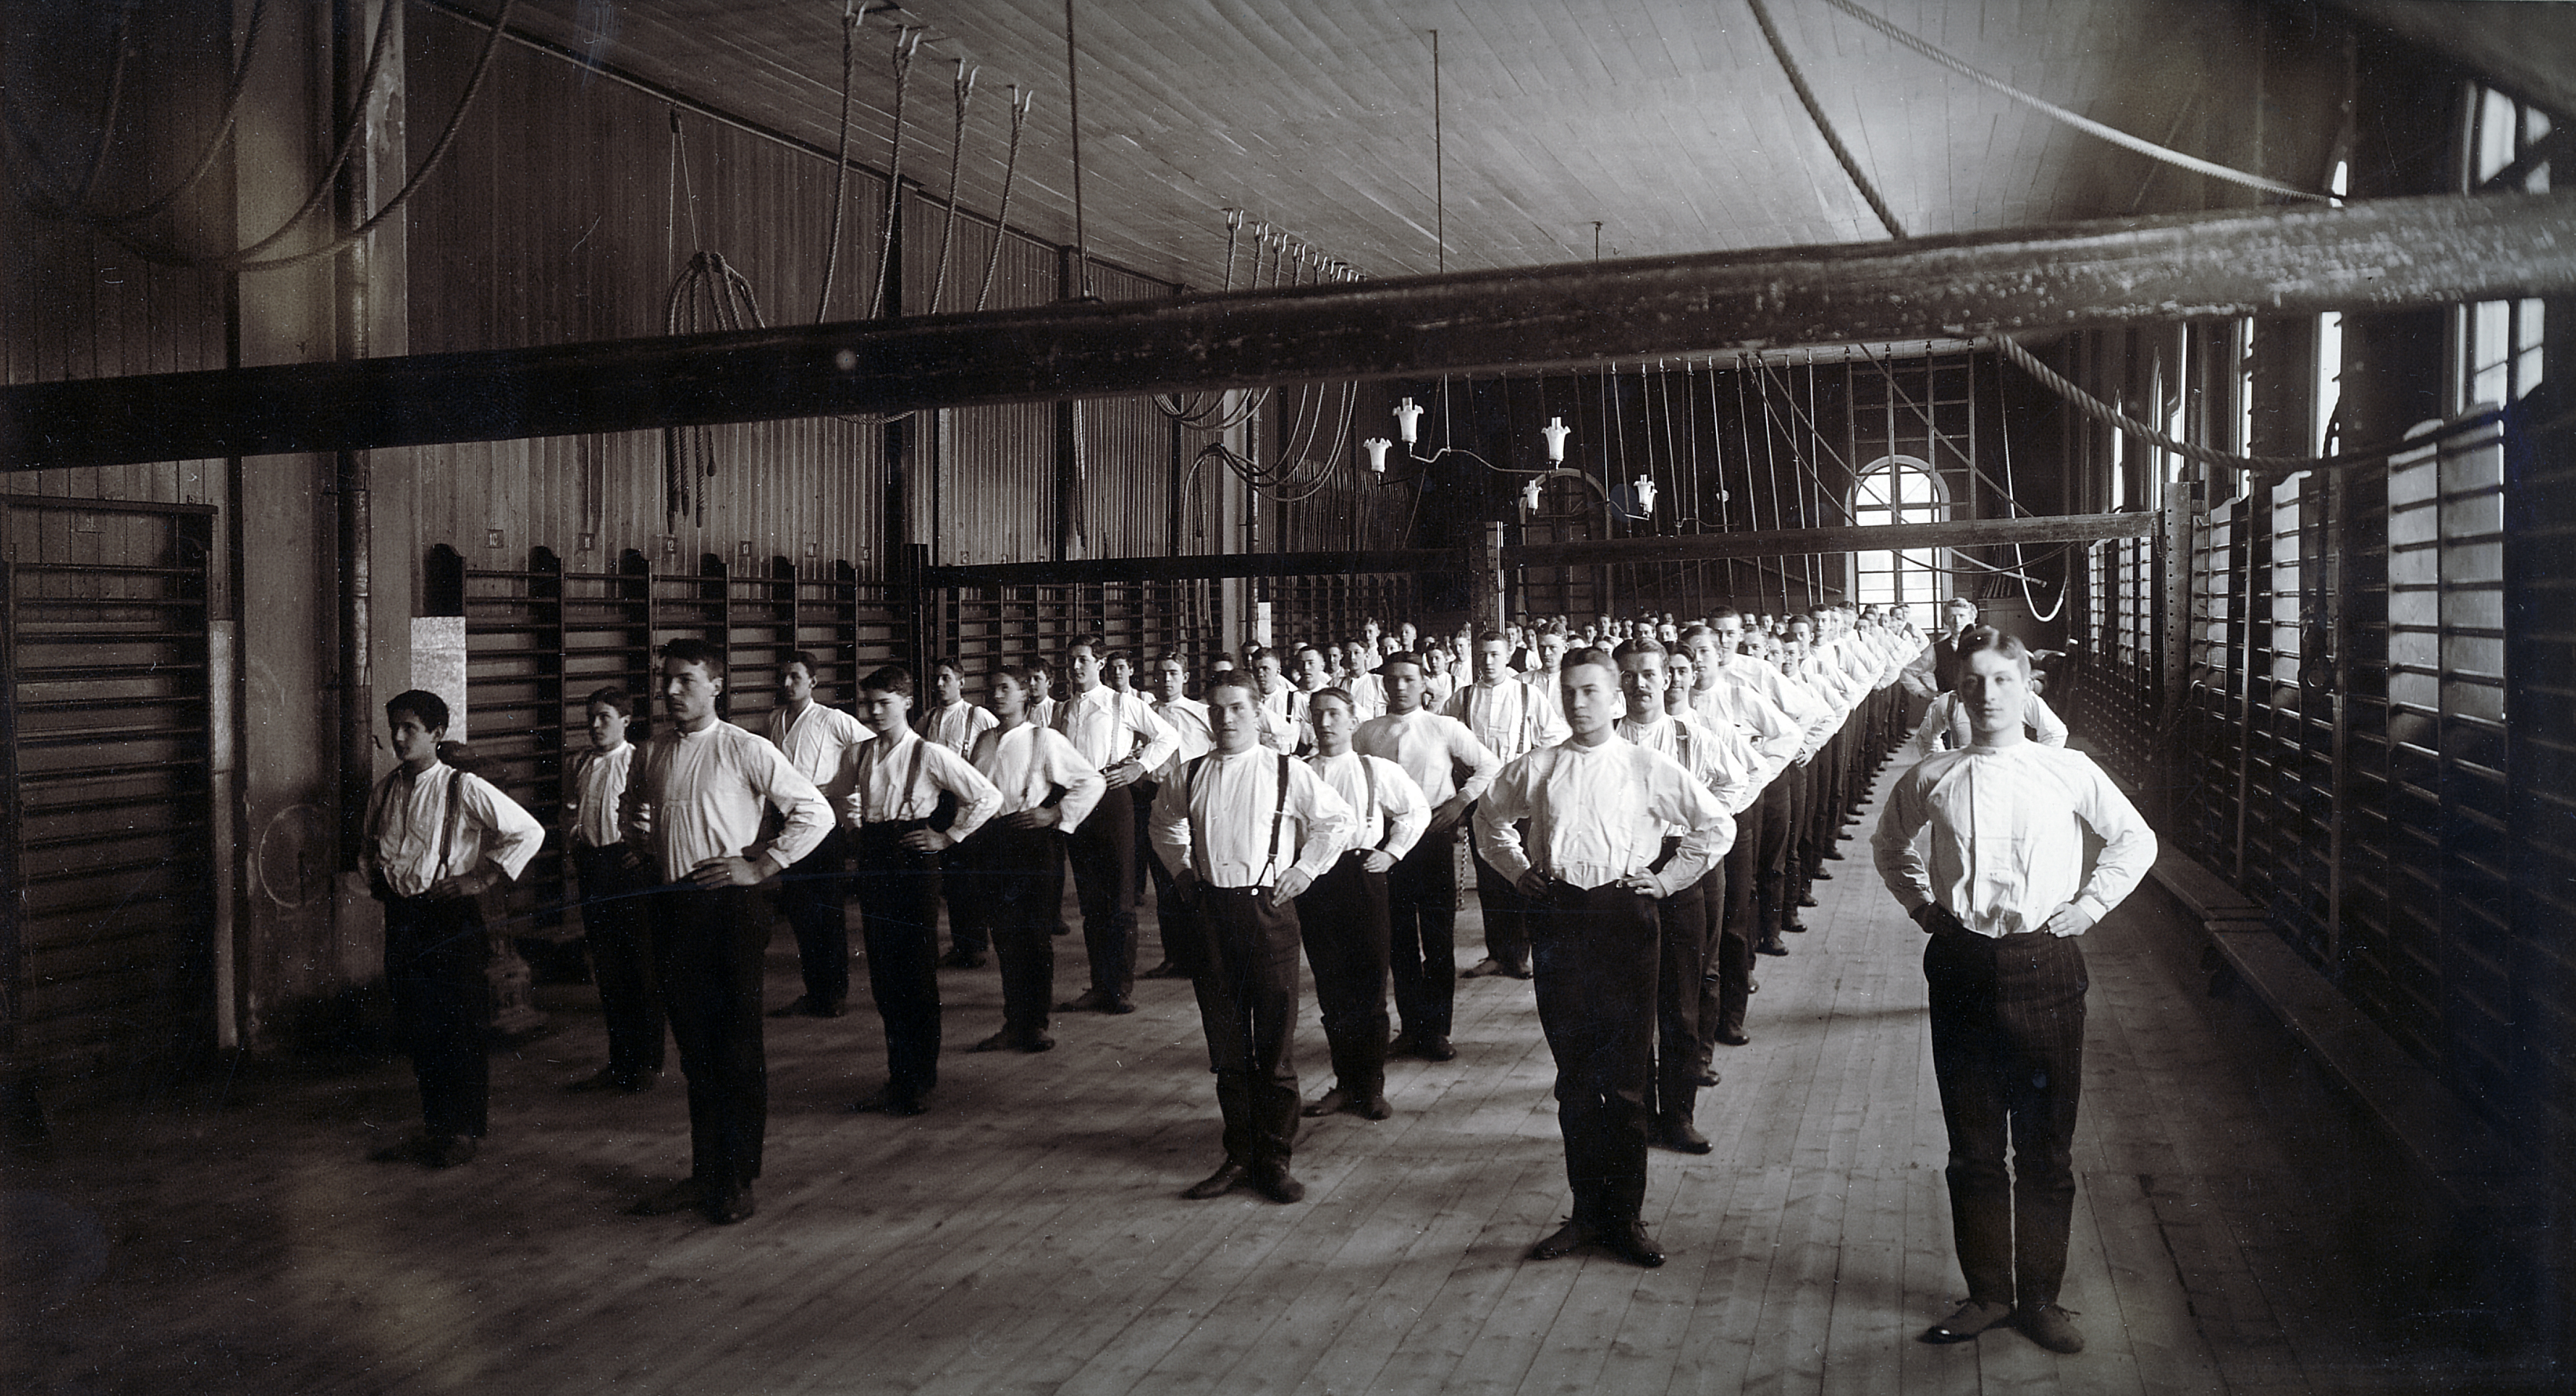 Unga män i vita skjortor och mörka byxor står i fem långa rader. Alla står rakt med armarna på höfterna. Trägolv, bommar, ribbstolar och rep syns i rummet.